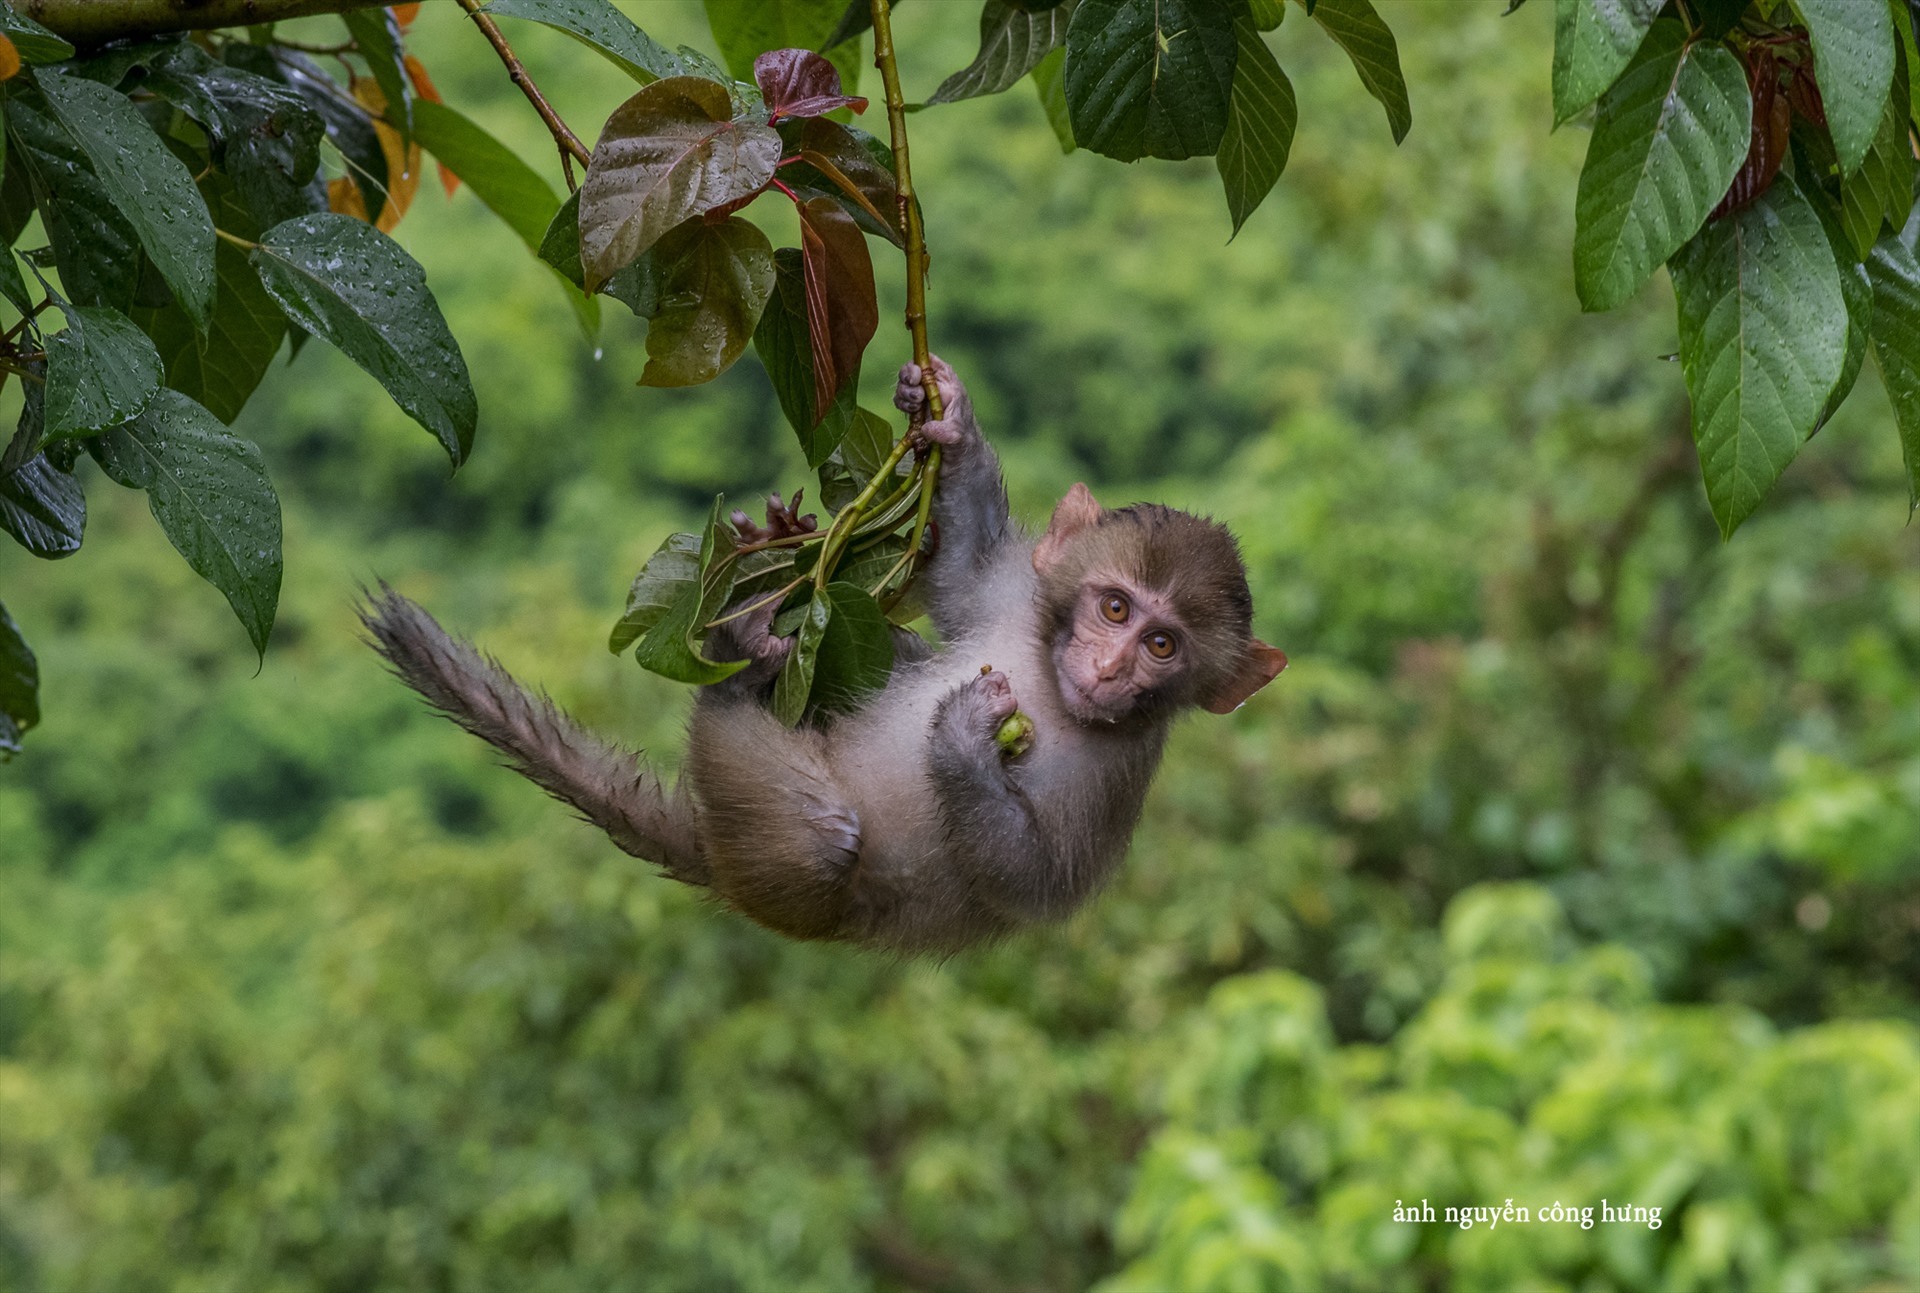 Một thế giới của những khỉ, của thiên nhiên hoang sơ và bình yên. Hãy bắt đầu hành trình khám phá đảo Khỉ bằng những hình ảnh đẹp ngỡ ngàng.